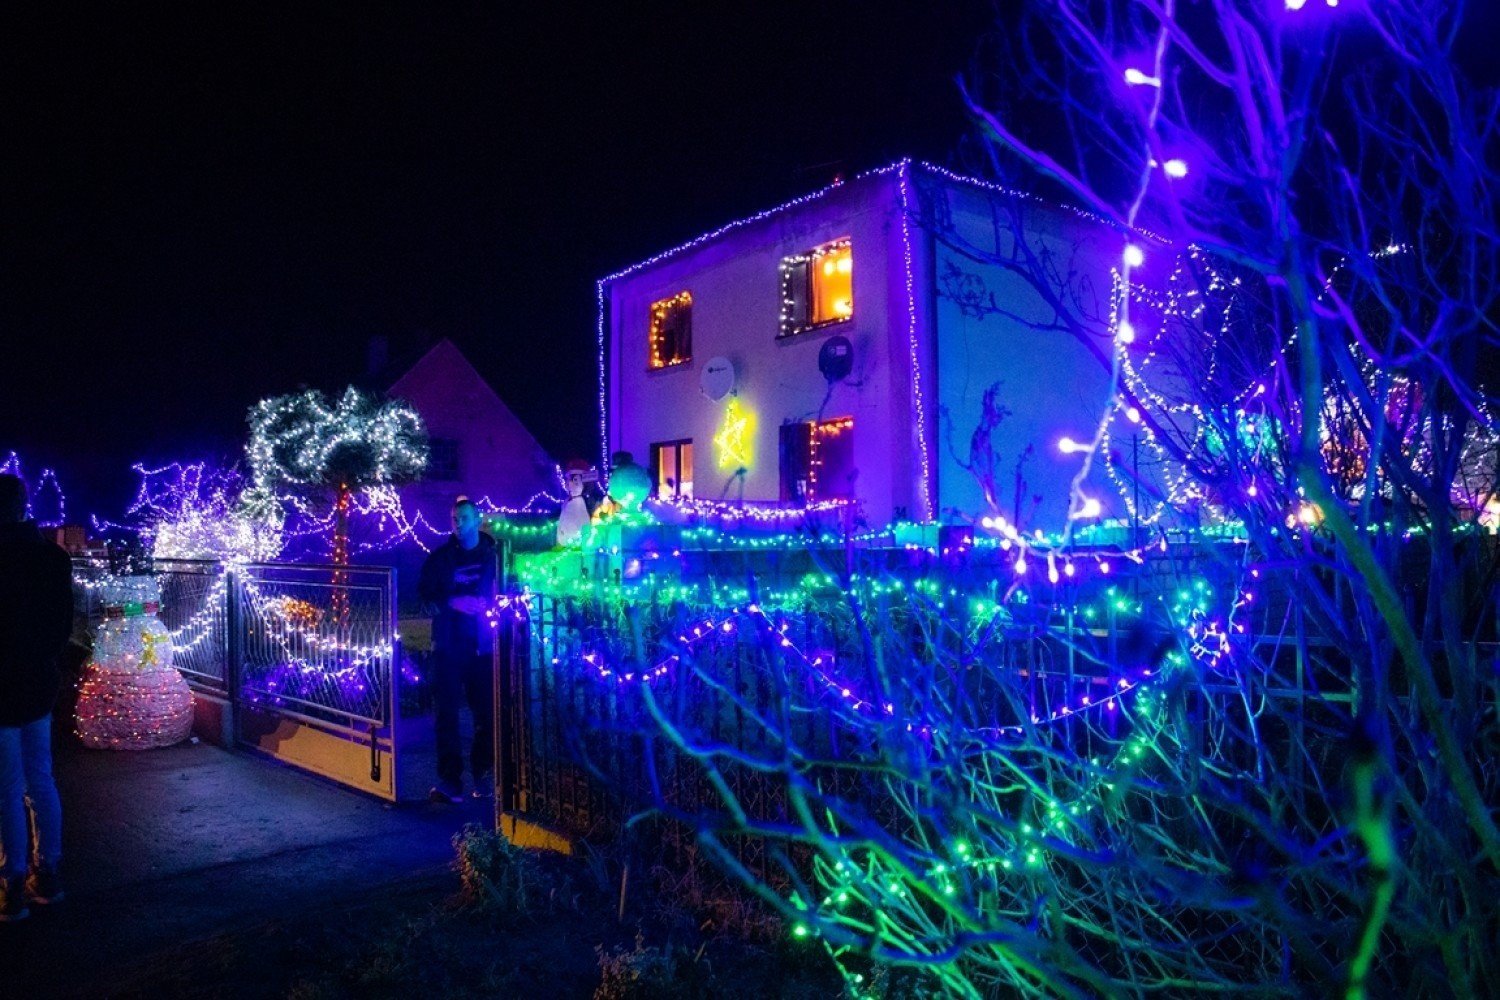 Niezwykle oświetlony dom w Wielkopolsce. Zdobi go 30 tys. świątecznych  lampek! Zobacz zdjęcia rozświetlonego gospodarstwa w Ludomach | Głos  Wielkopolski